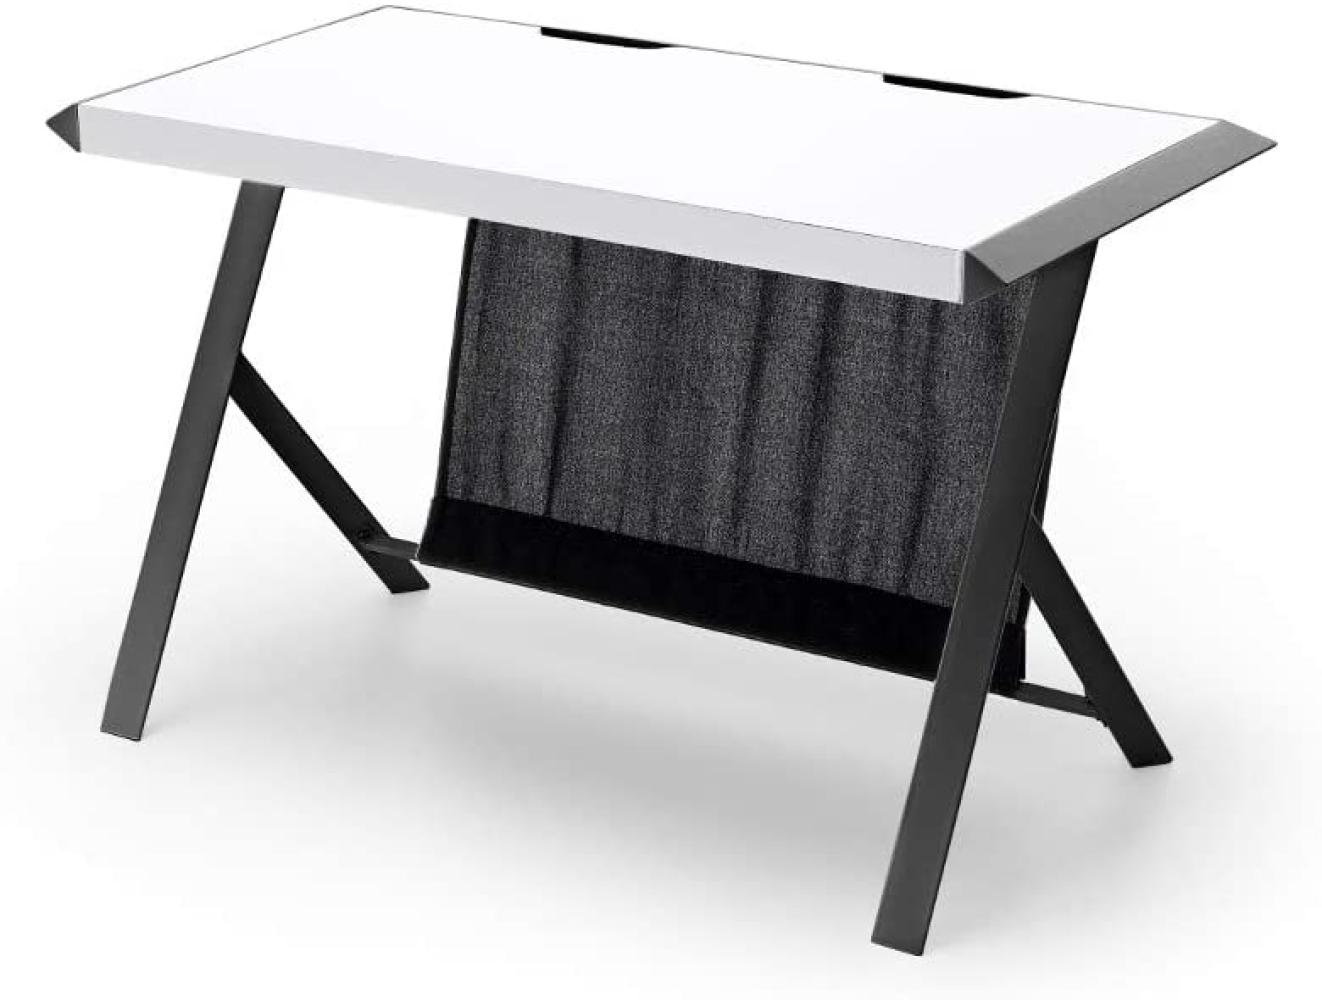 'McRacing' Schreibtisch, Metall lackiert weiß/ schwarz, 75 x 60 x 127 cm Bild 1